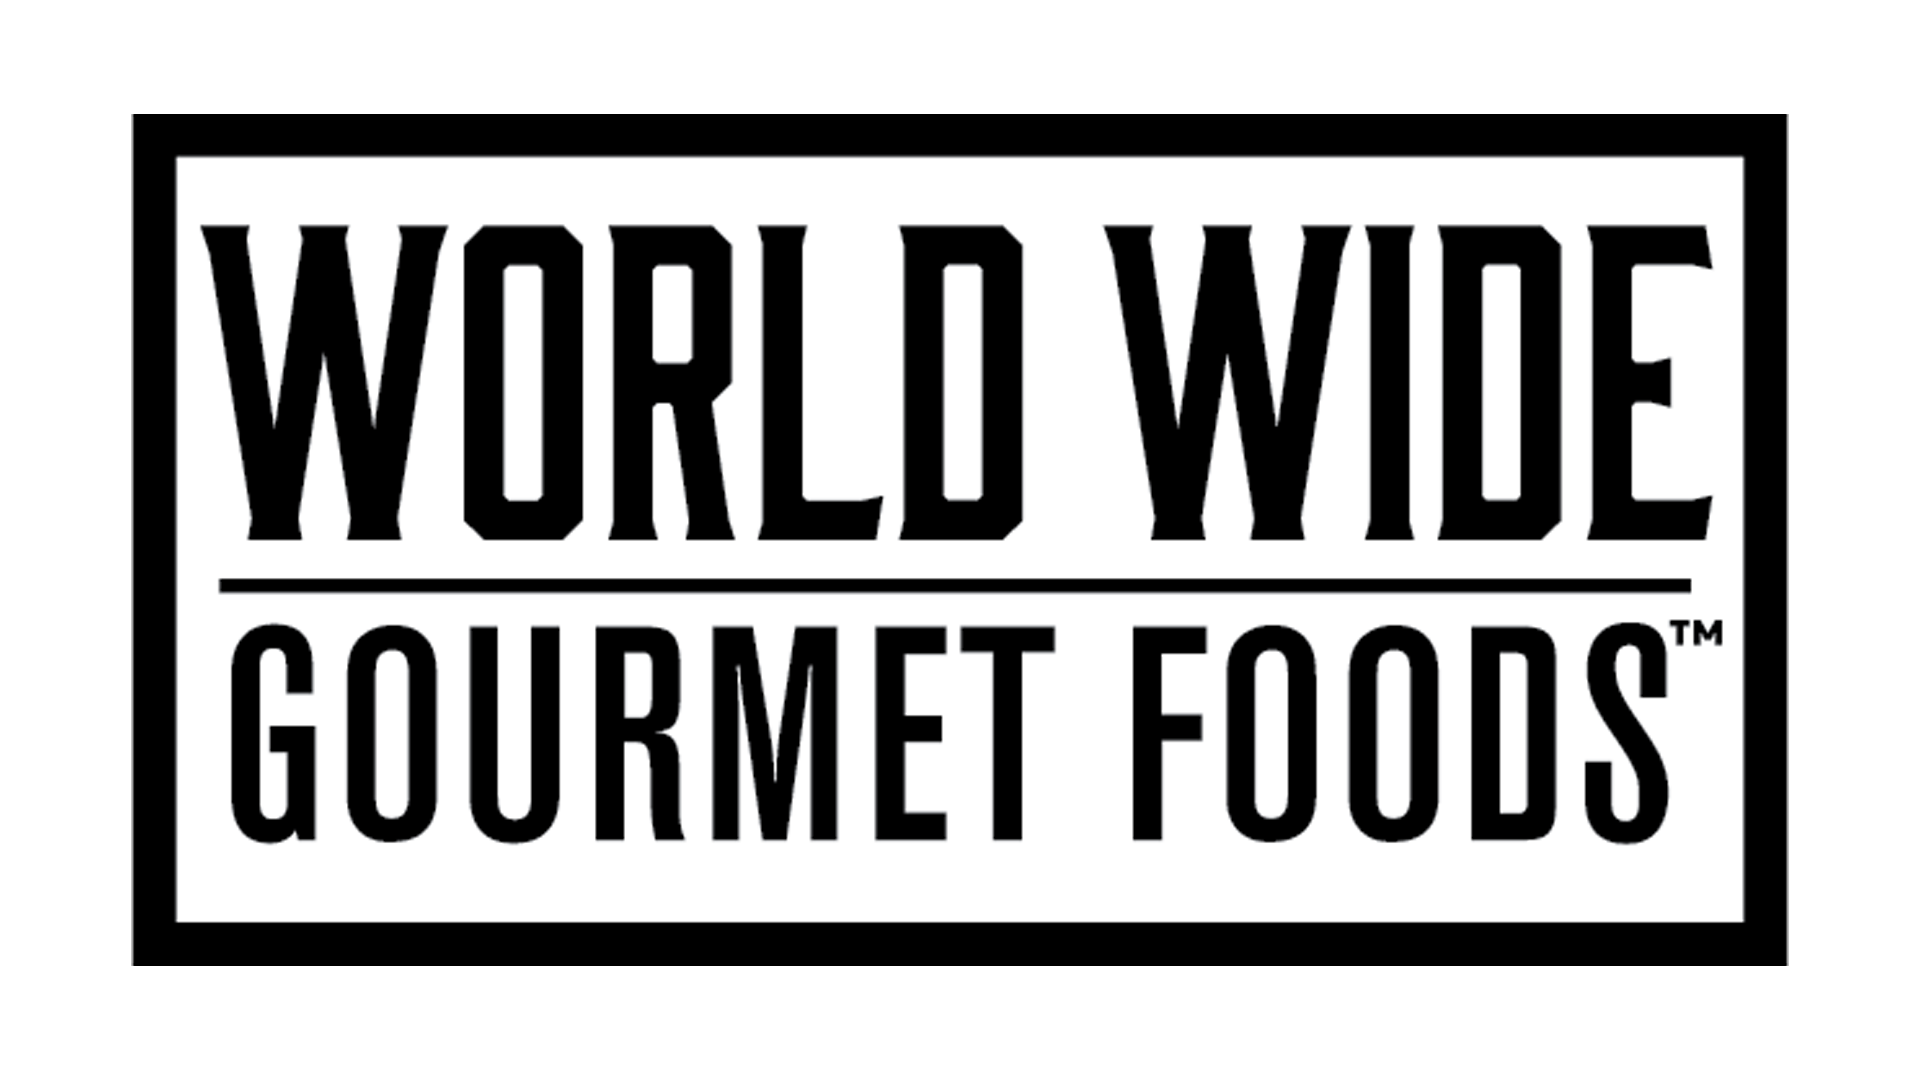 World Wide Gourmet Foods